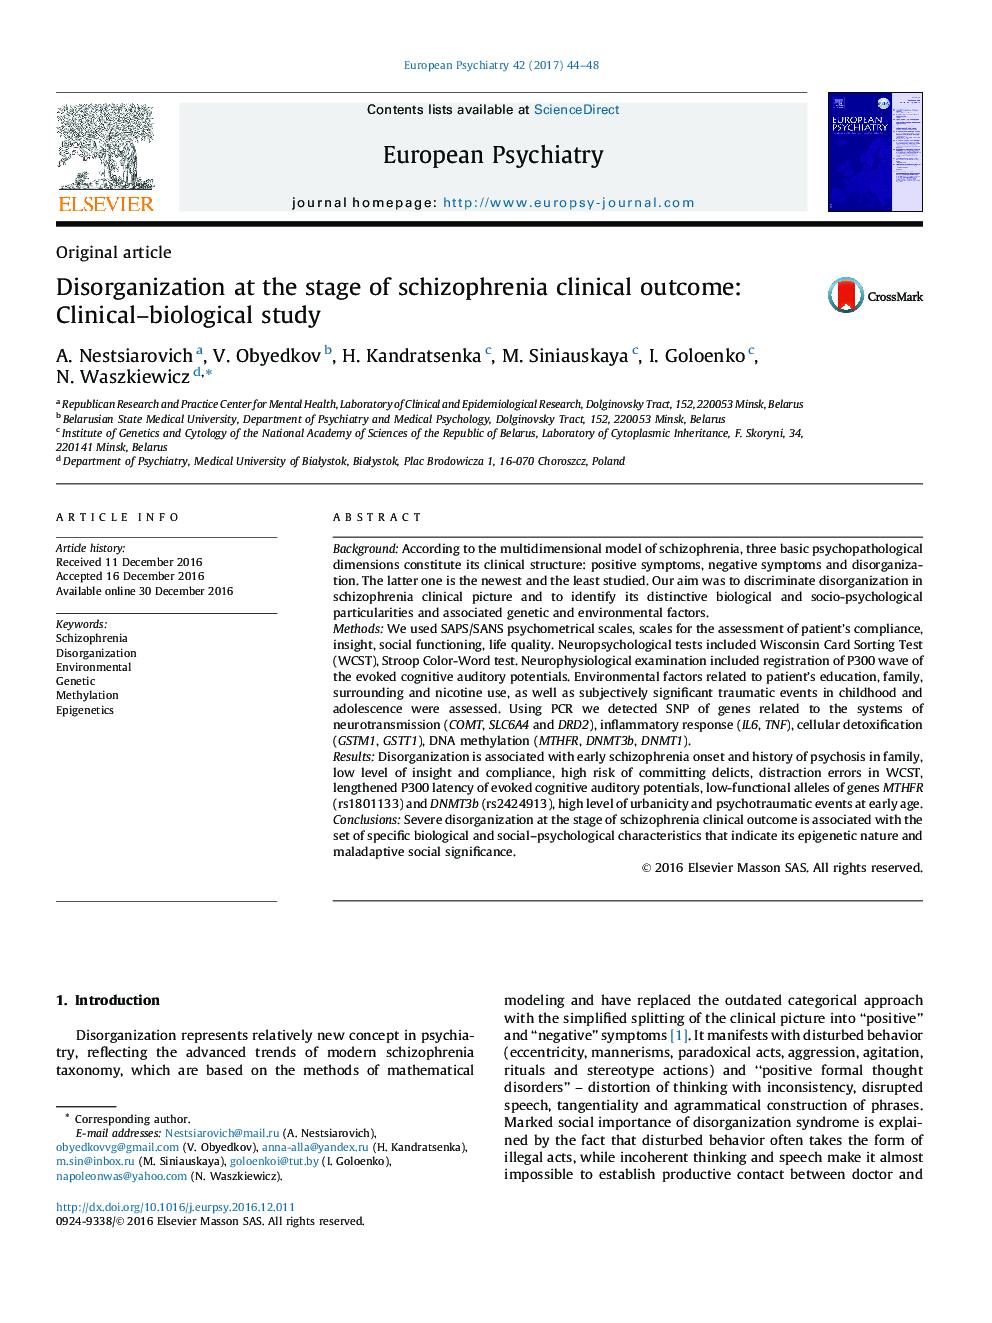 مقاله اصلی سازماندهی در مرحله بالینی نتیجه اسکیزوفرنی: مطالعه بالینی-بیولوژیکی 